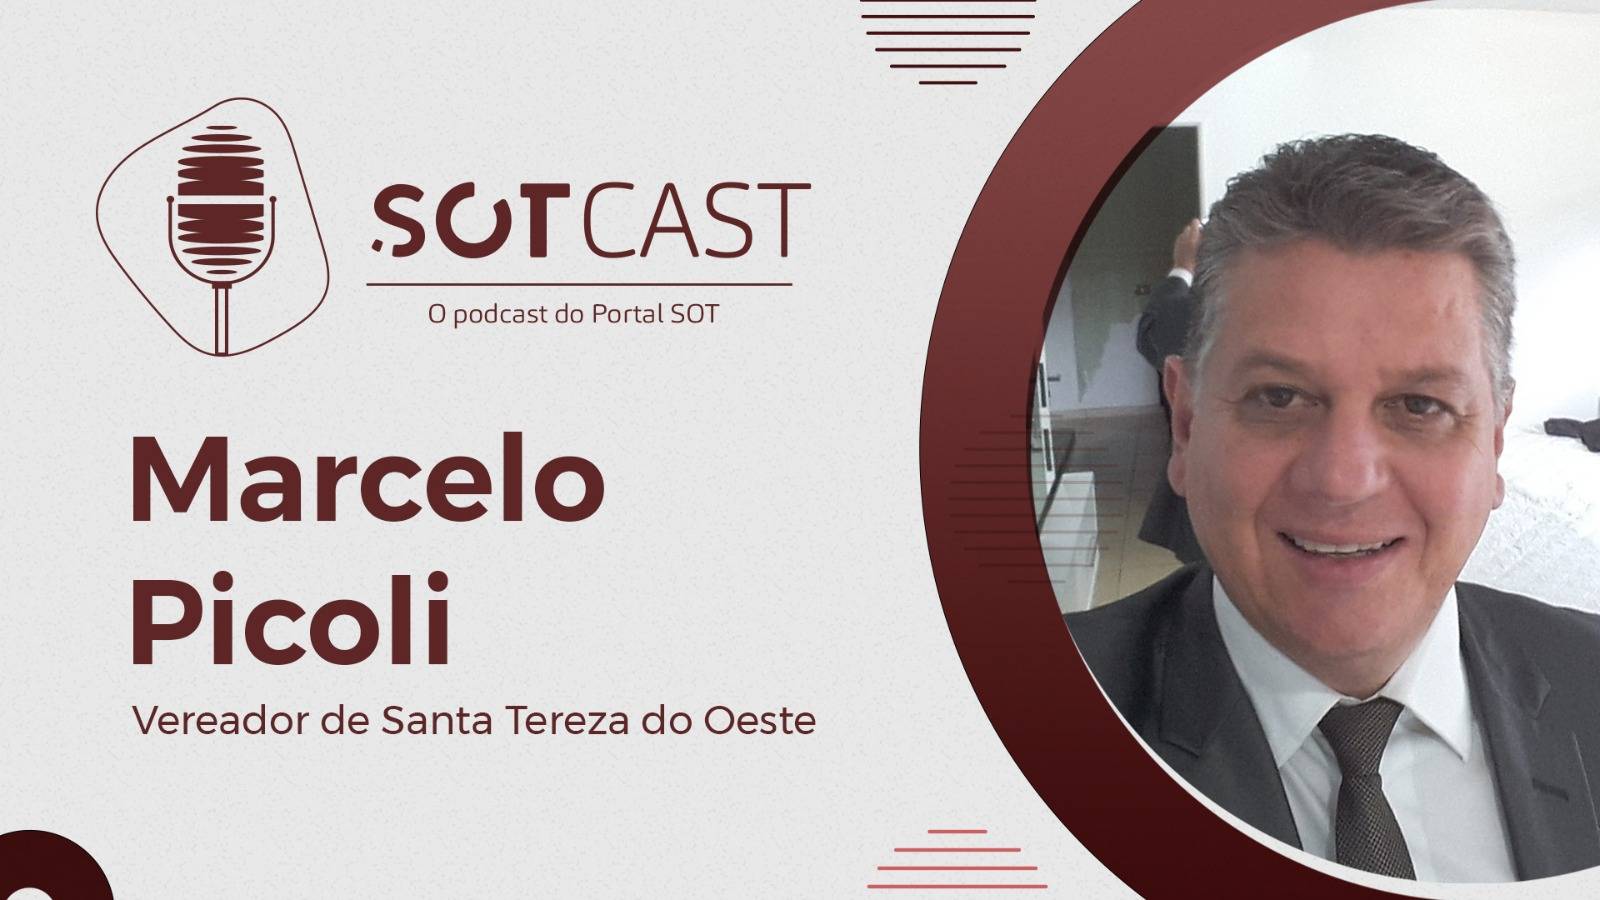 Vereador Marcelo Picoli - Santa Tereza do Oeste | #007 - SOTCast